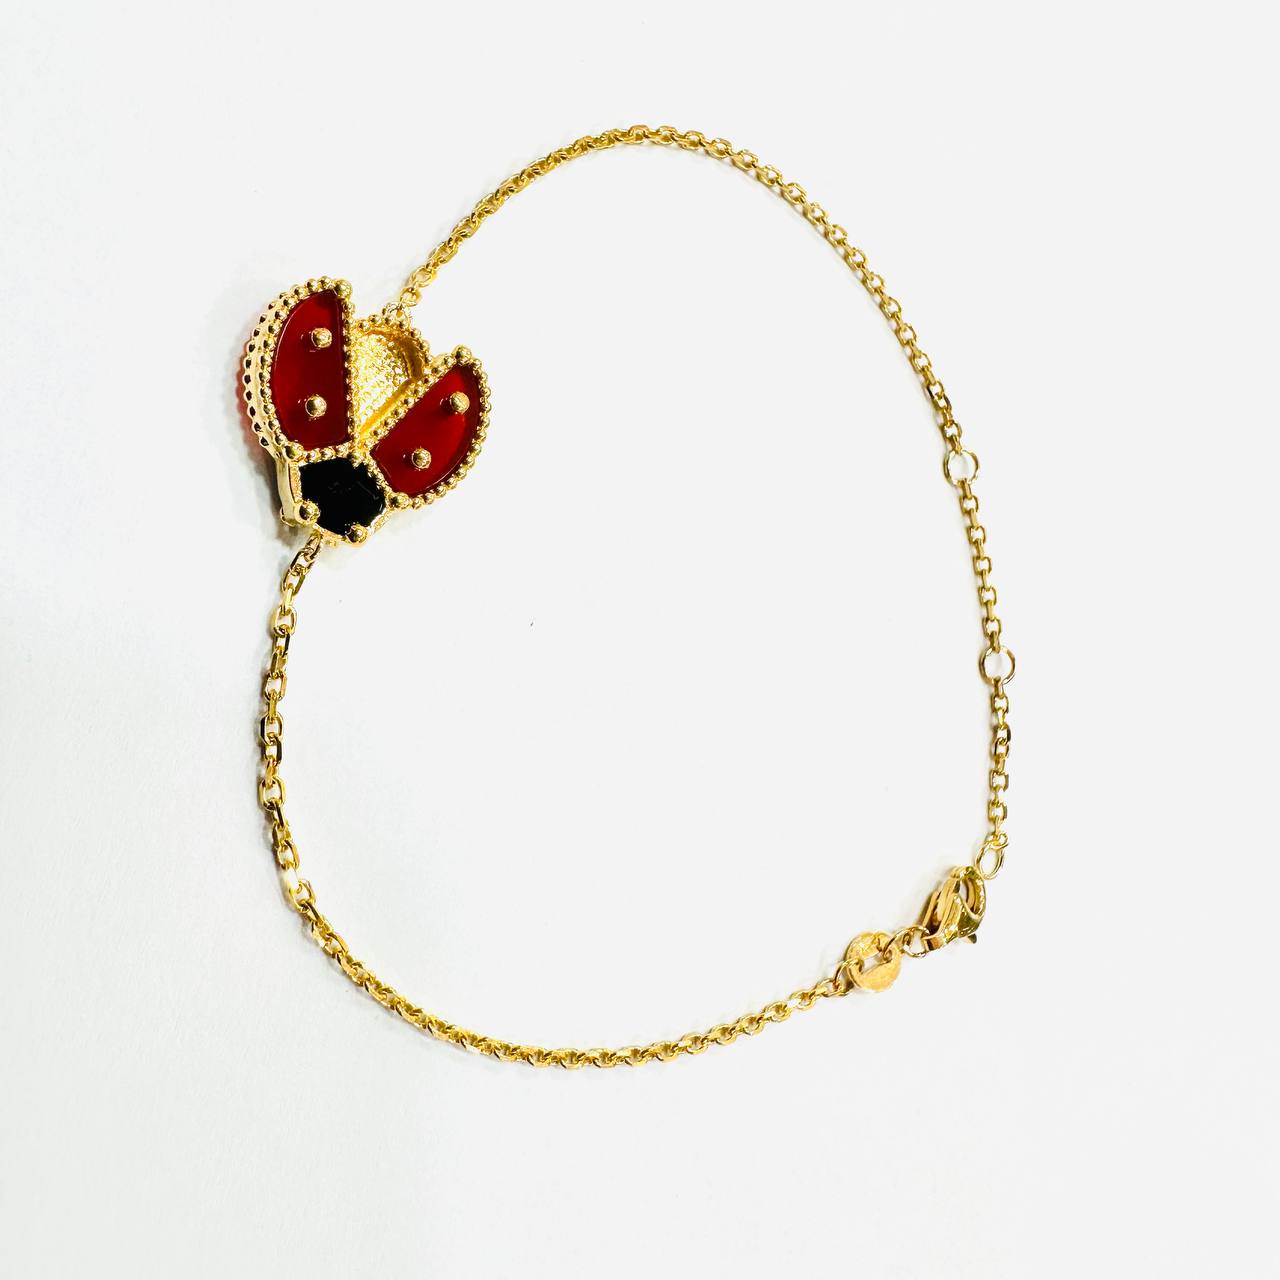 22K / 916 Gold Lady Bug VC bracelet-Bracelets-Best Gold Shop